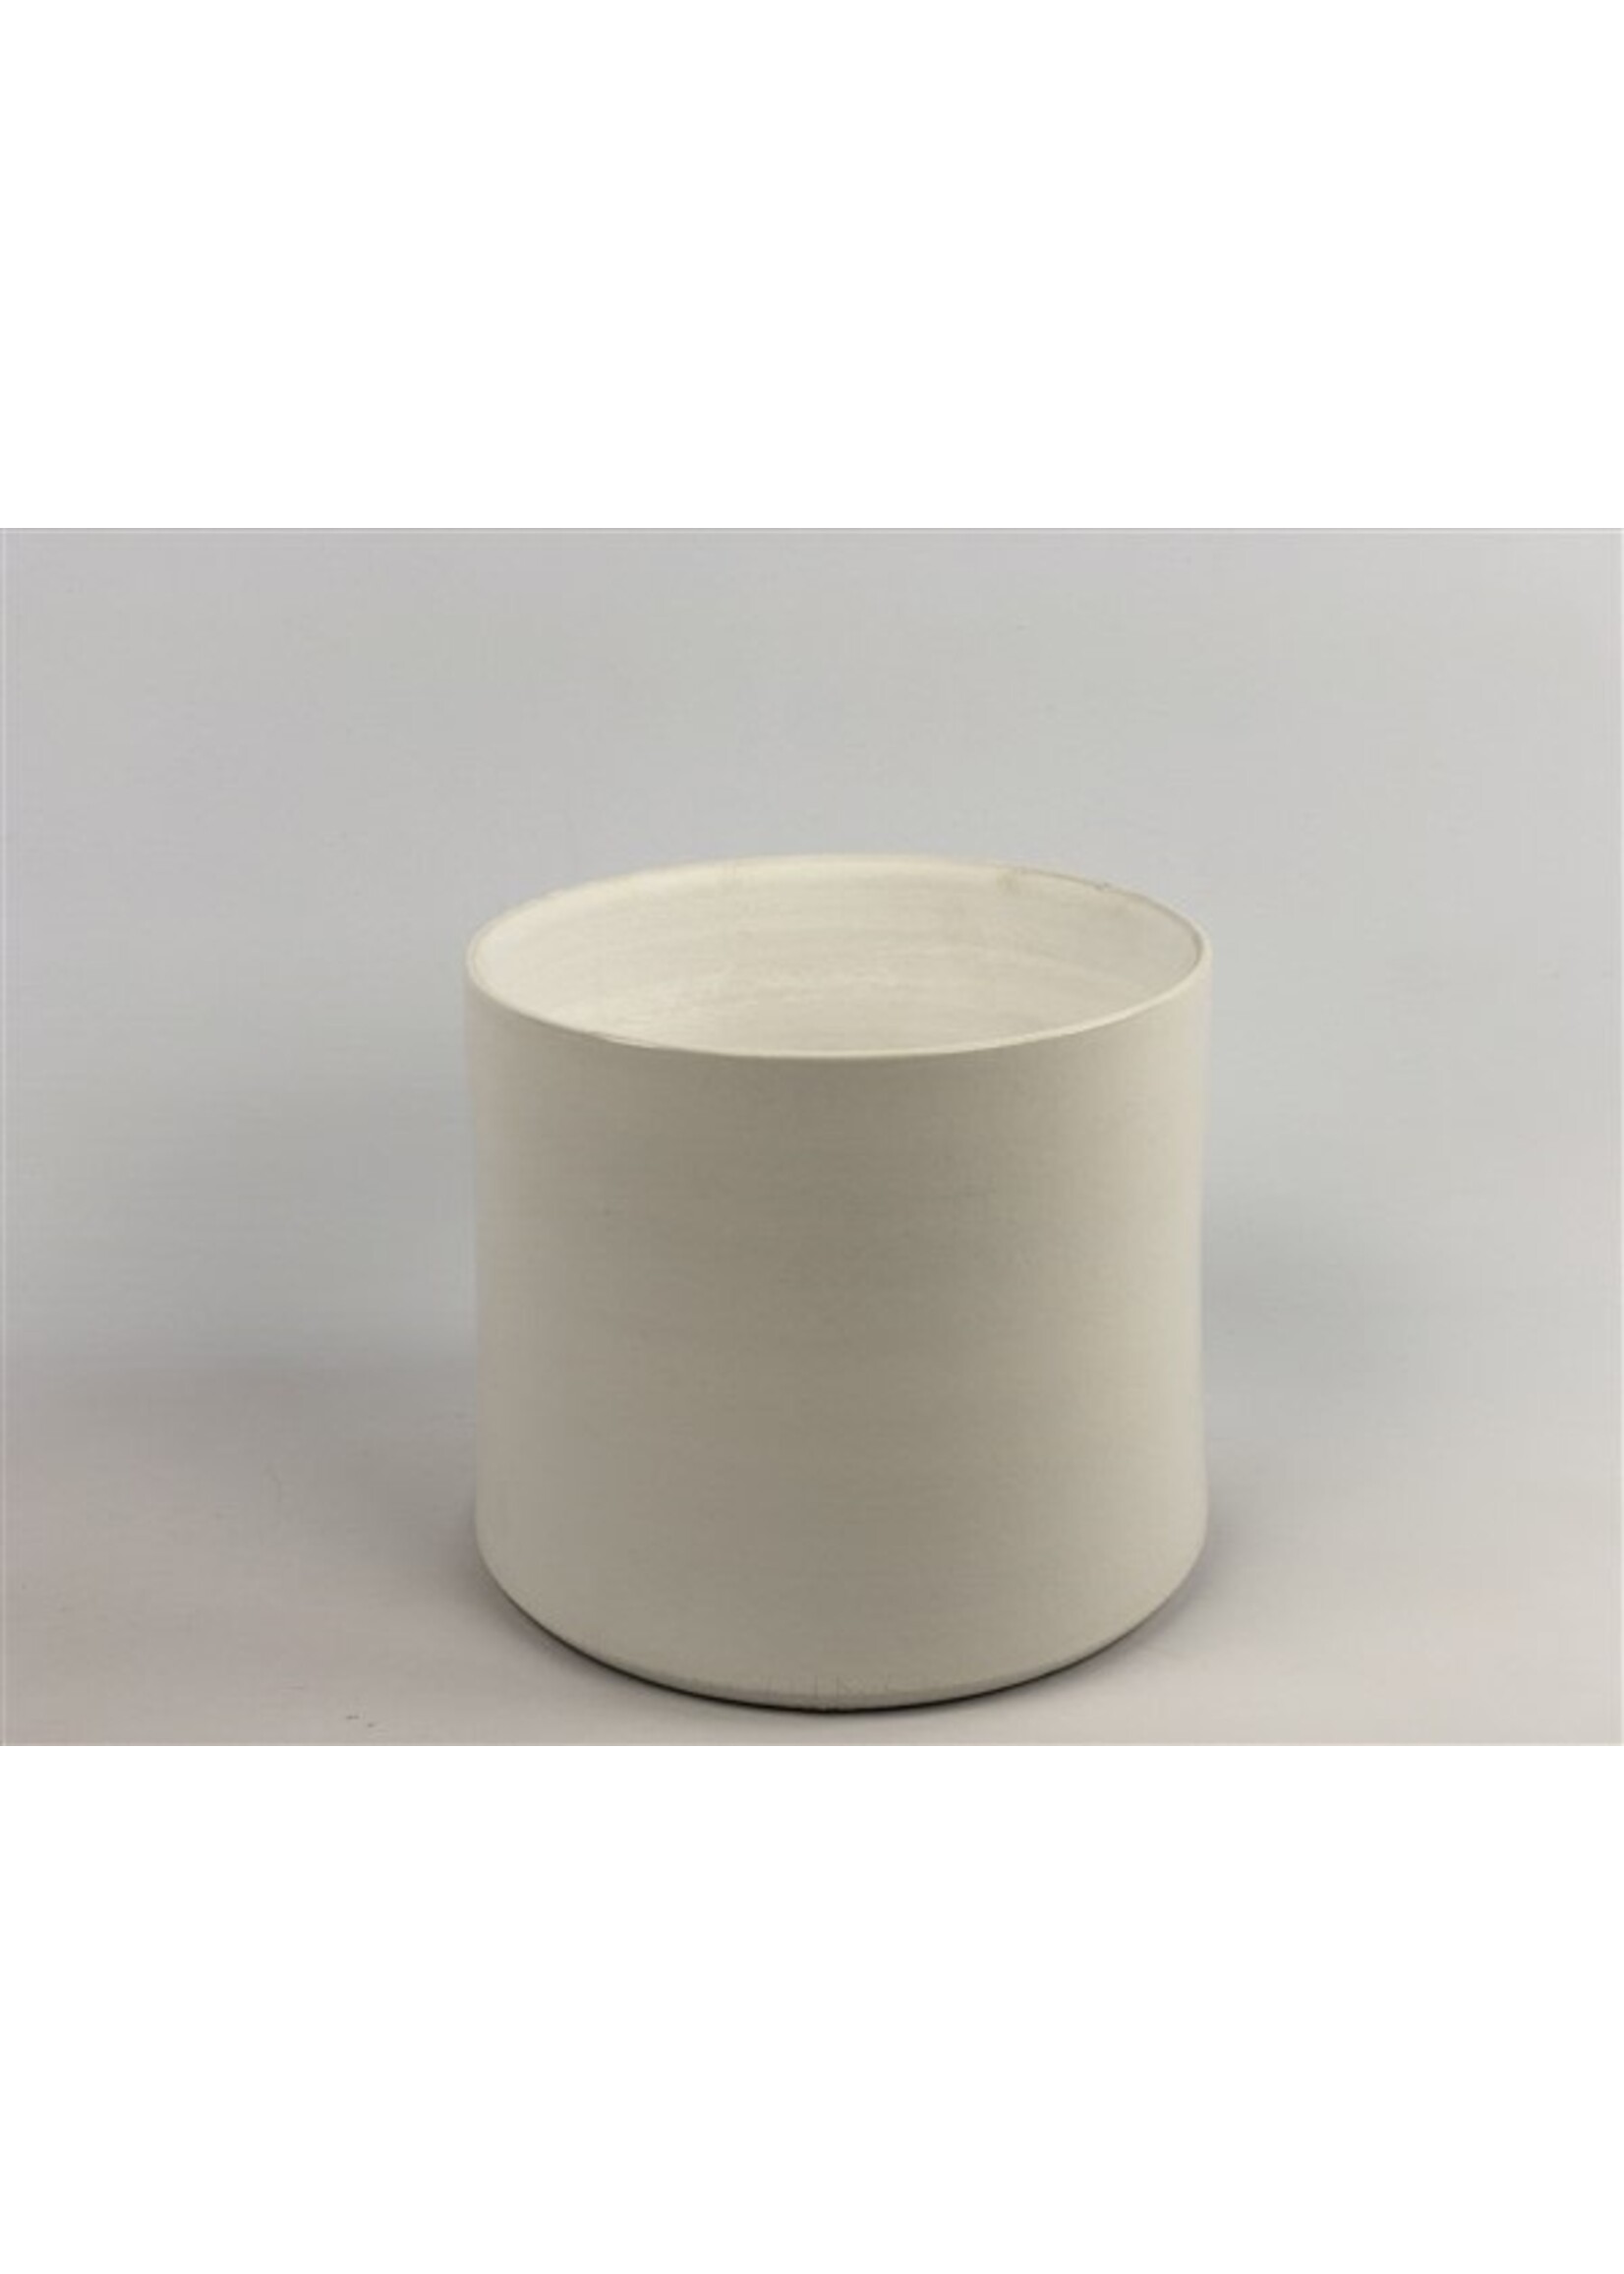 Cocoon Design Pot Conic Ø12 h12 - White